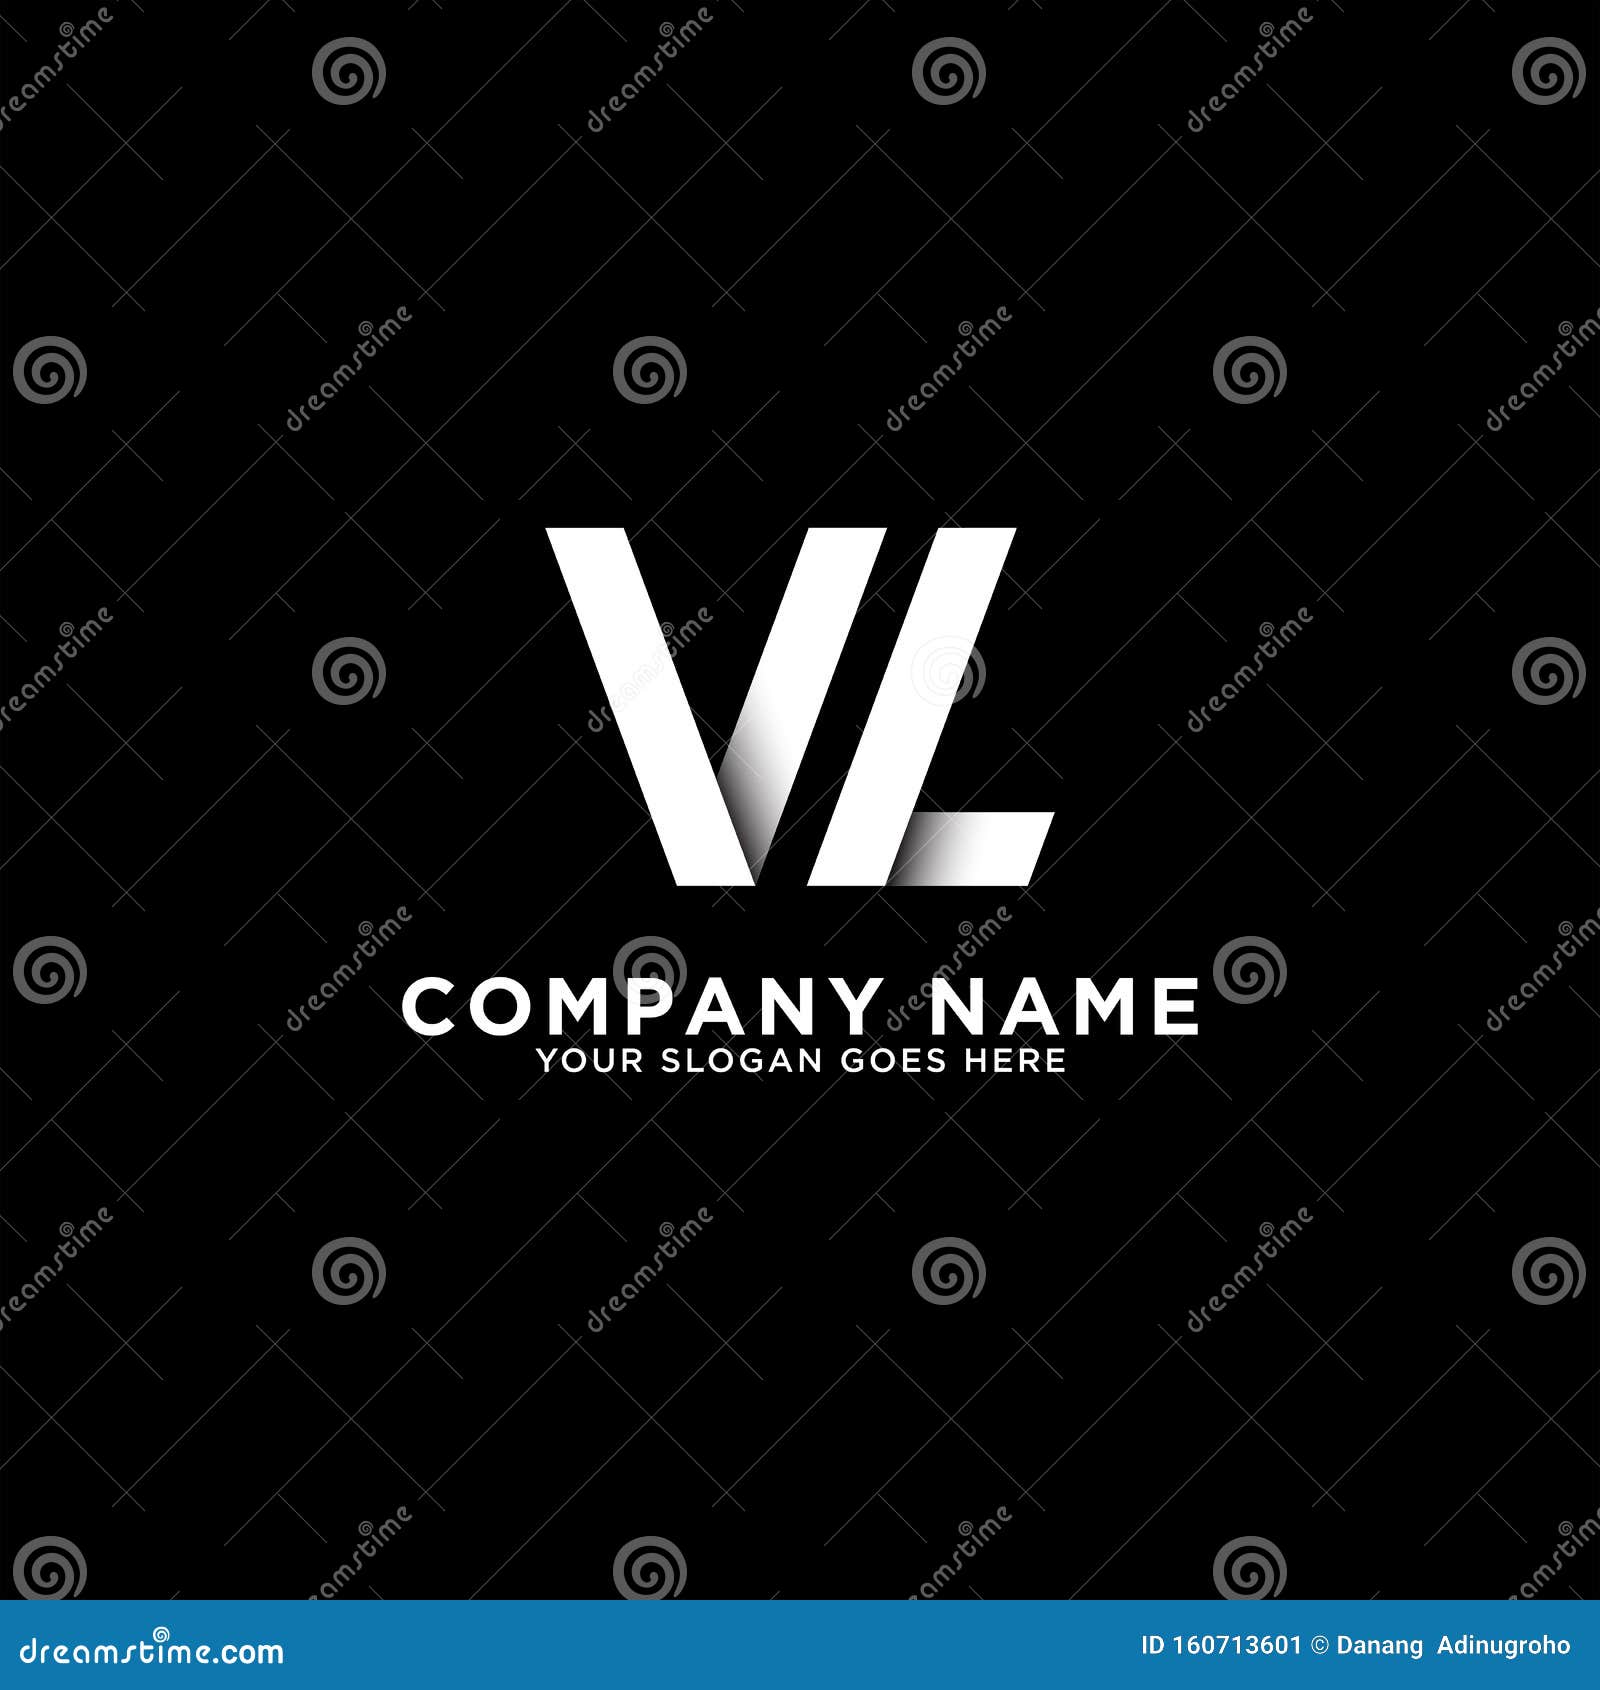 Vl Letter Logo Stock Illustrations – 769 Vl Letter Logo Stock  Illustrations, Vectors & Clipart - Dreamstime